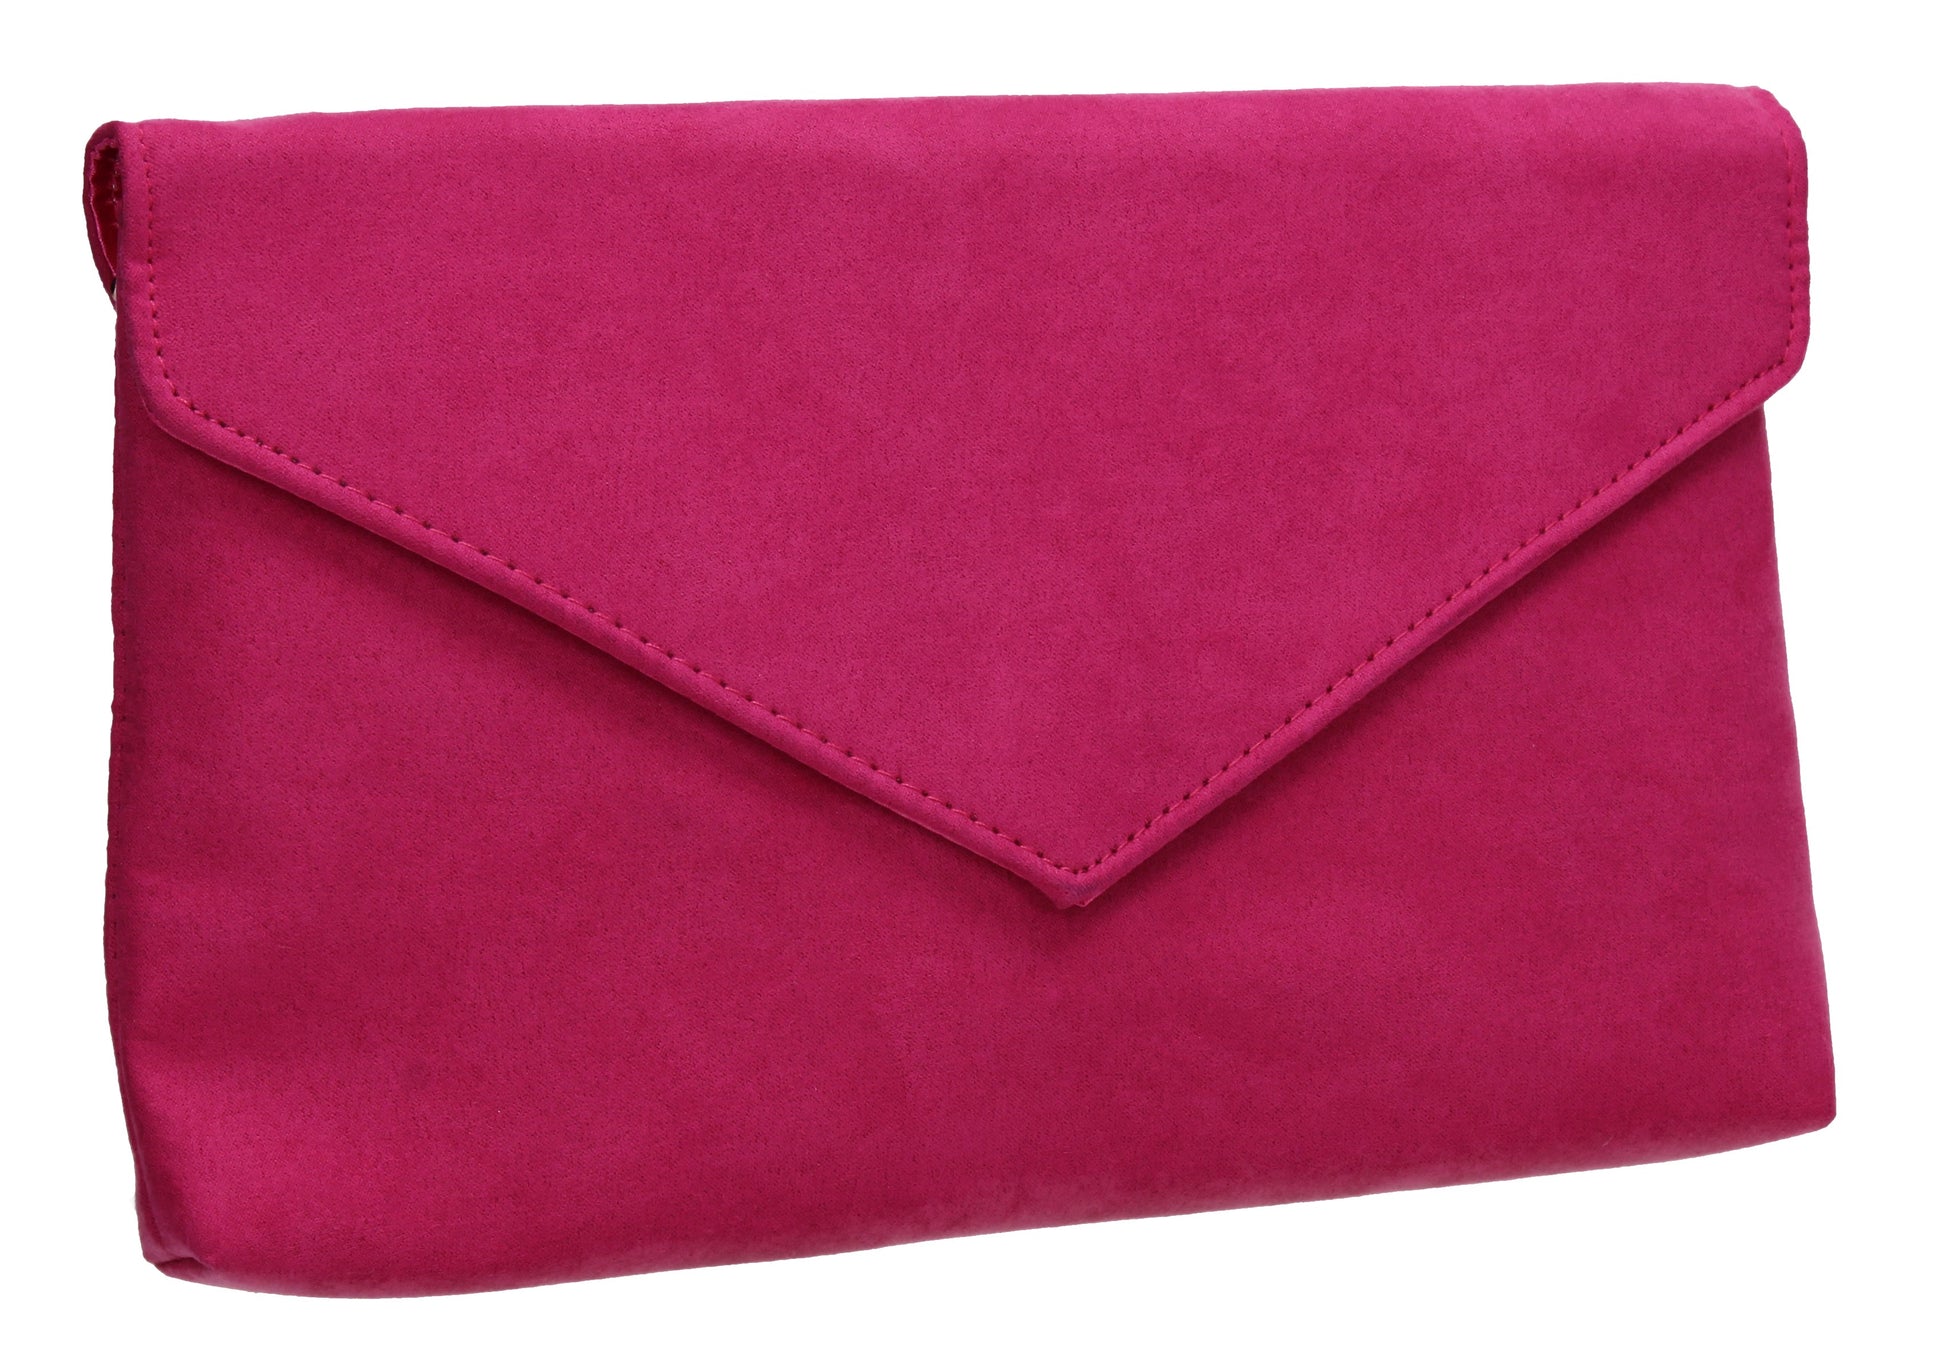 SWANKYSWANS Rosa Clutch Bag Fuchsia Cute Cheap Clutch Bag For Weddings School and Work